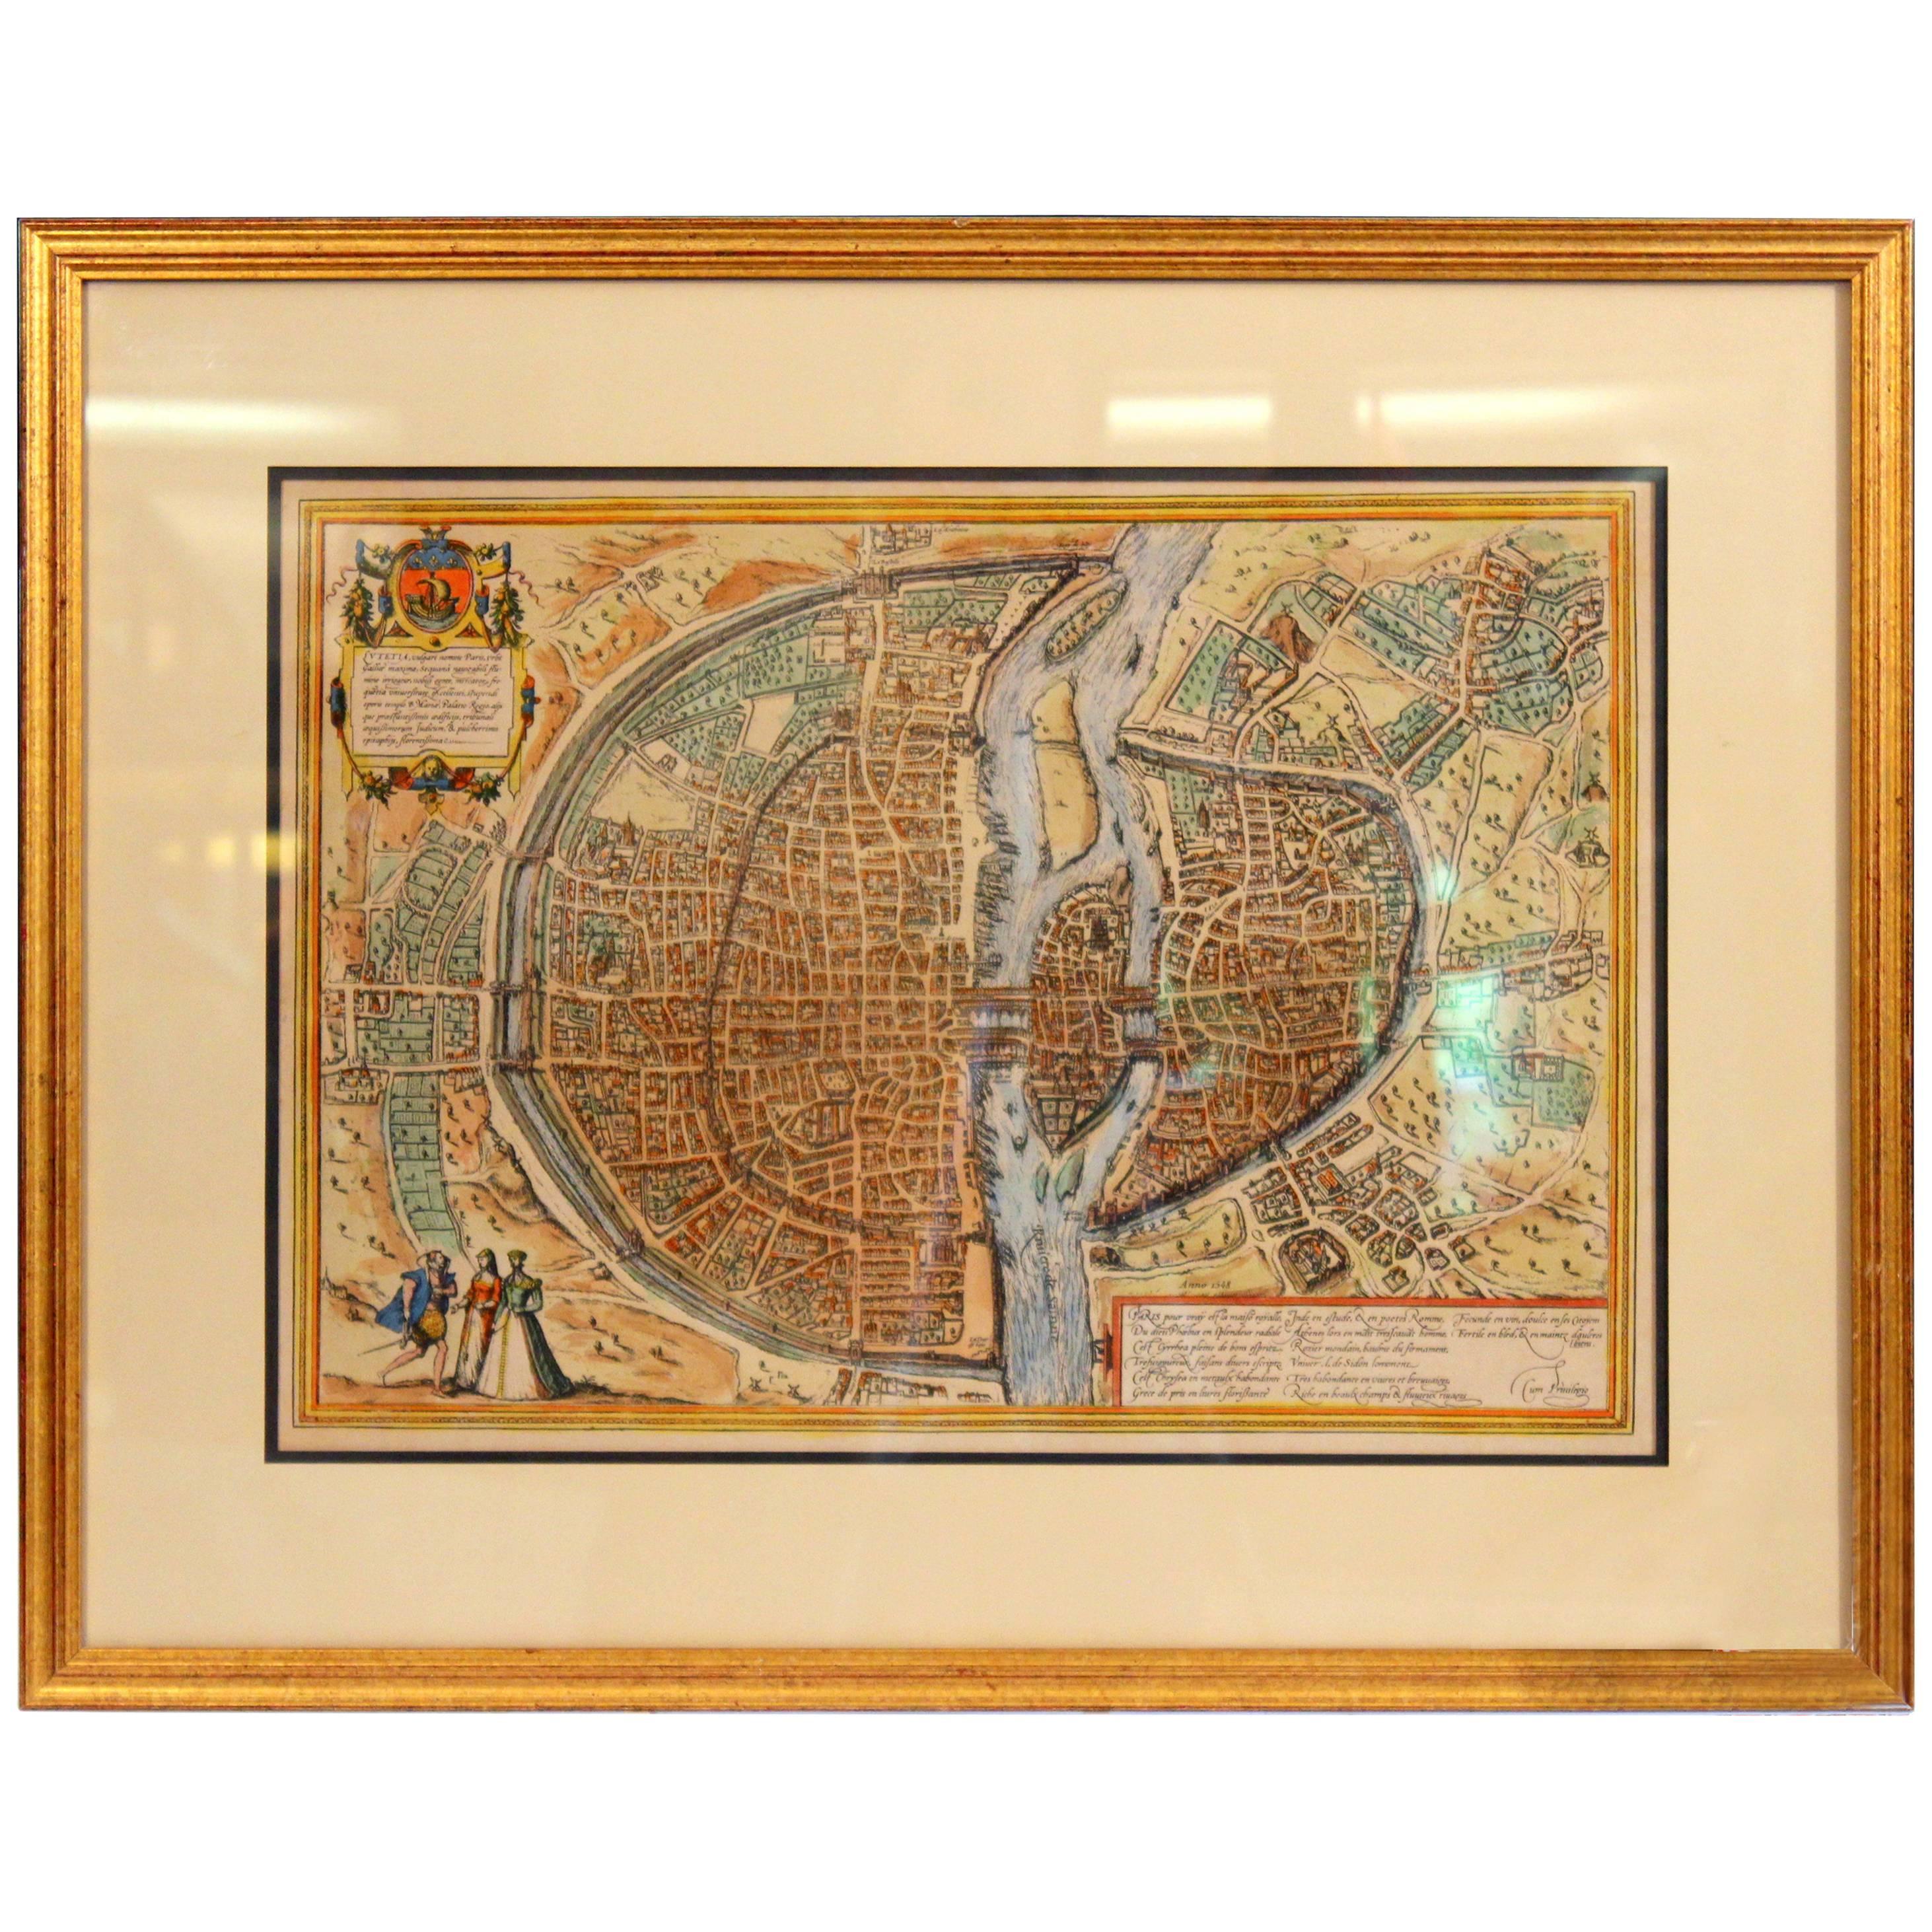 Carte de l'ancienne gravure de Paris encadrée Munster français de ville murale du 16ème siècle encadrée